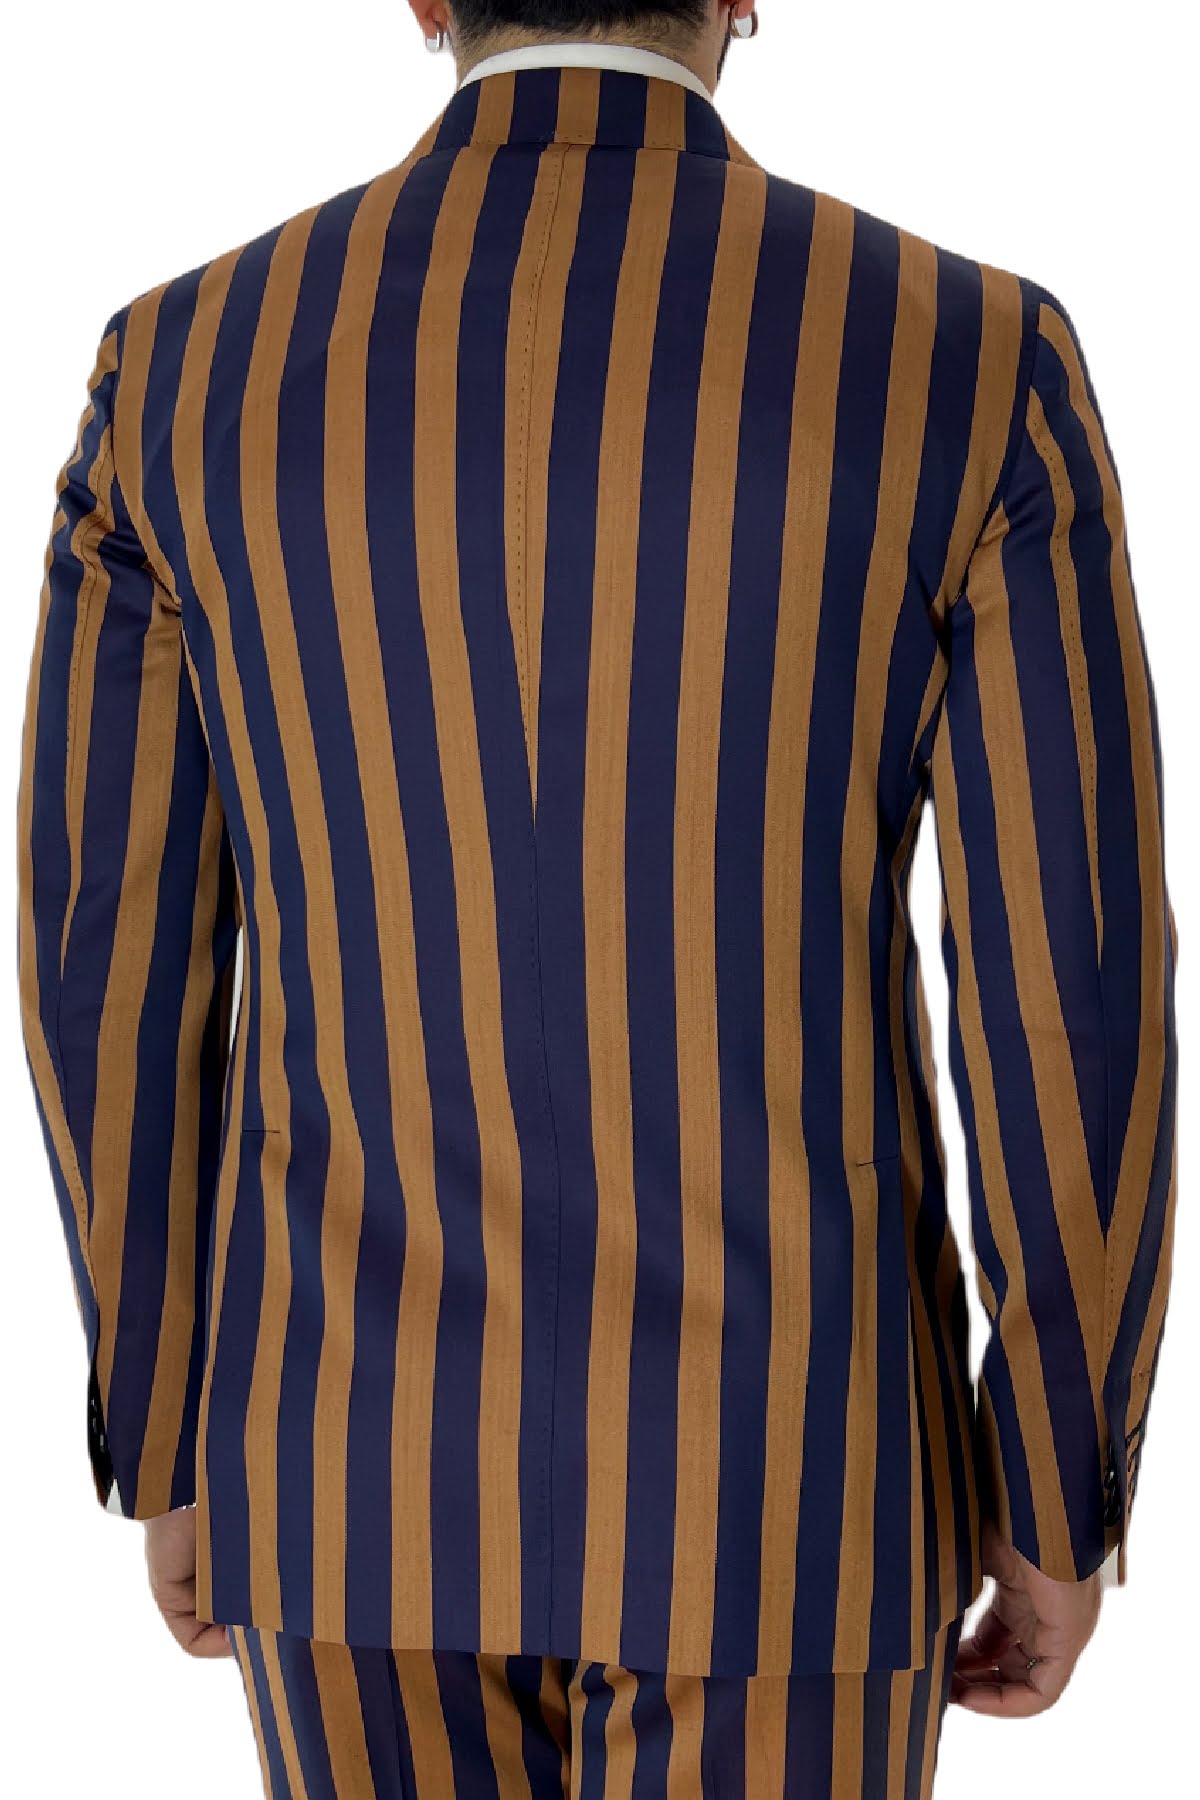 Giacca uomo doppiopetto arancio riga blu in fresco lana 120's Holland & Sherry